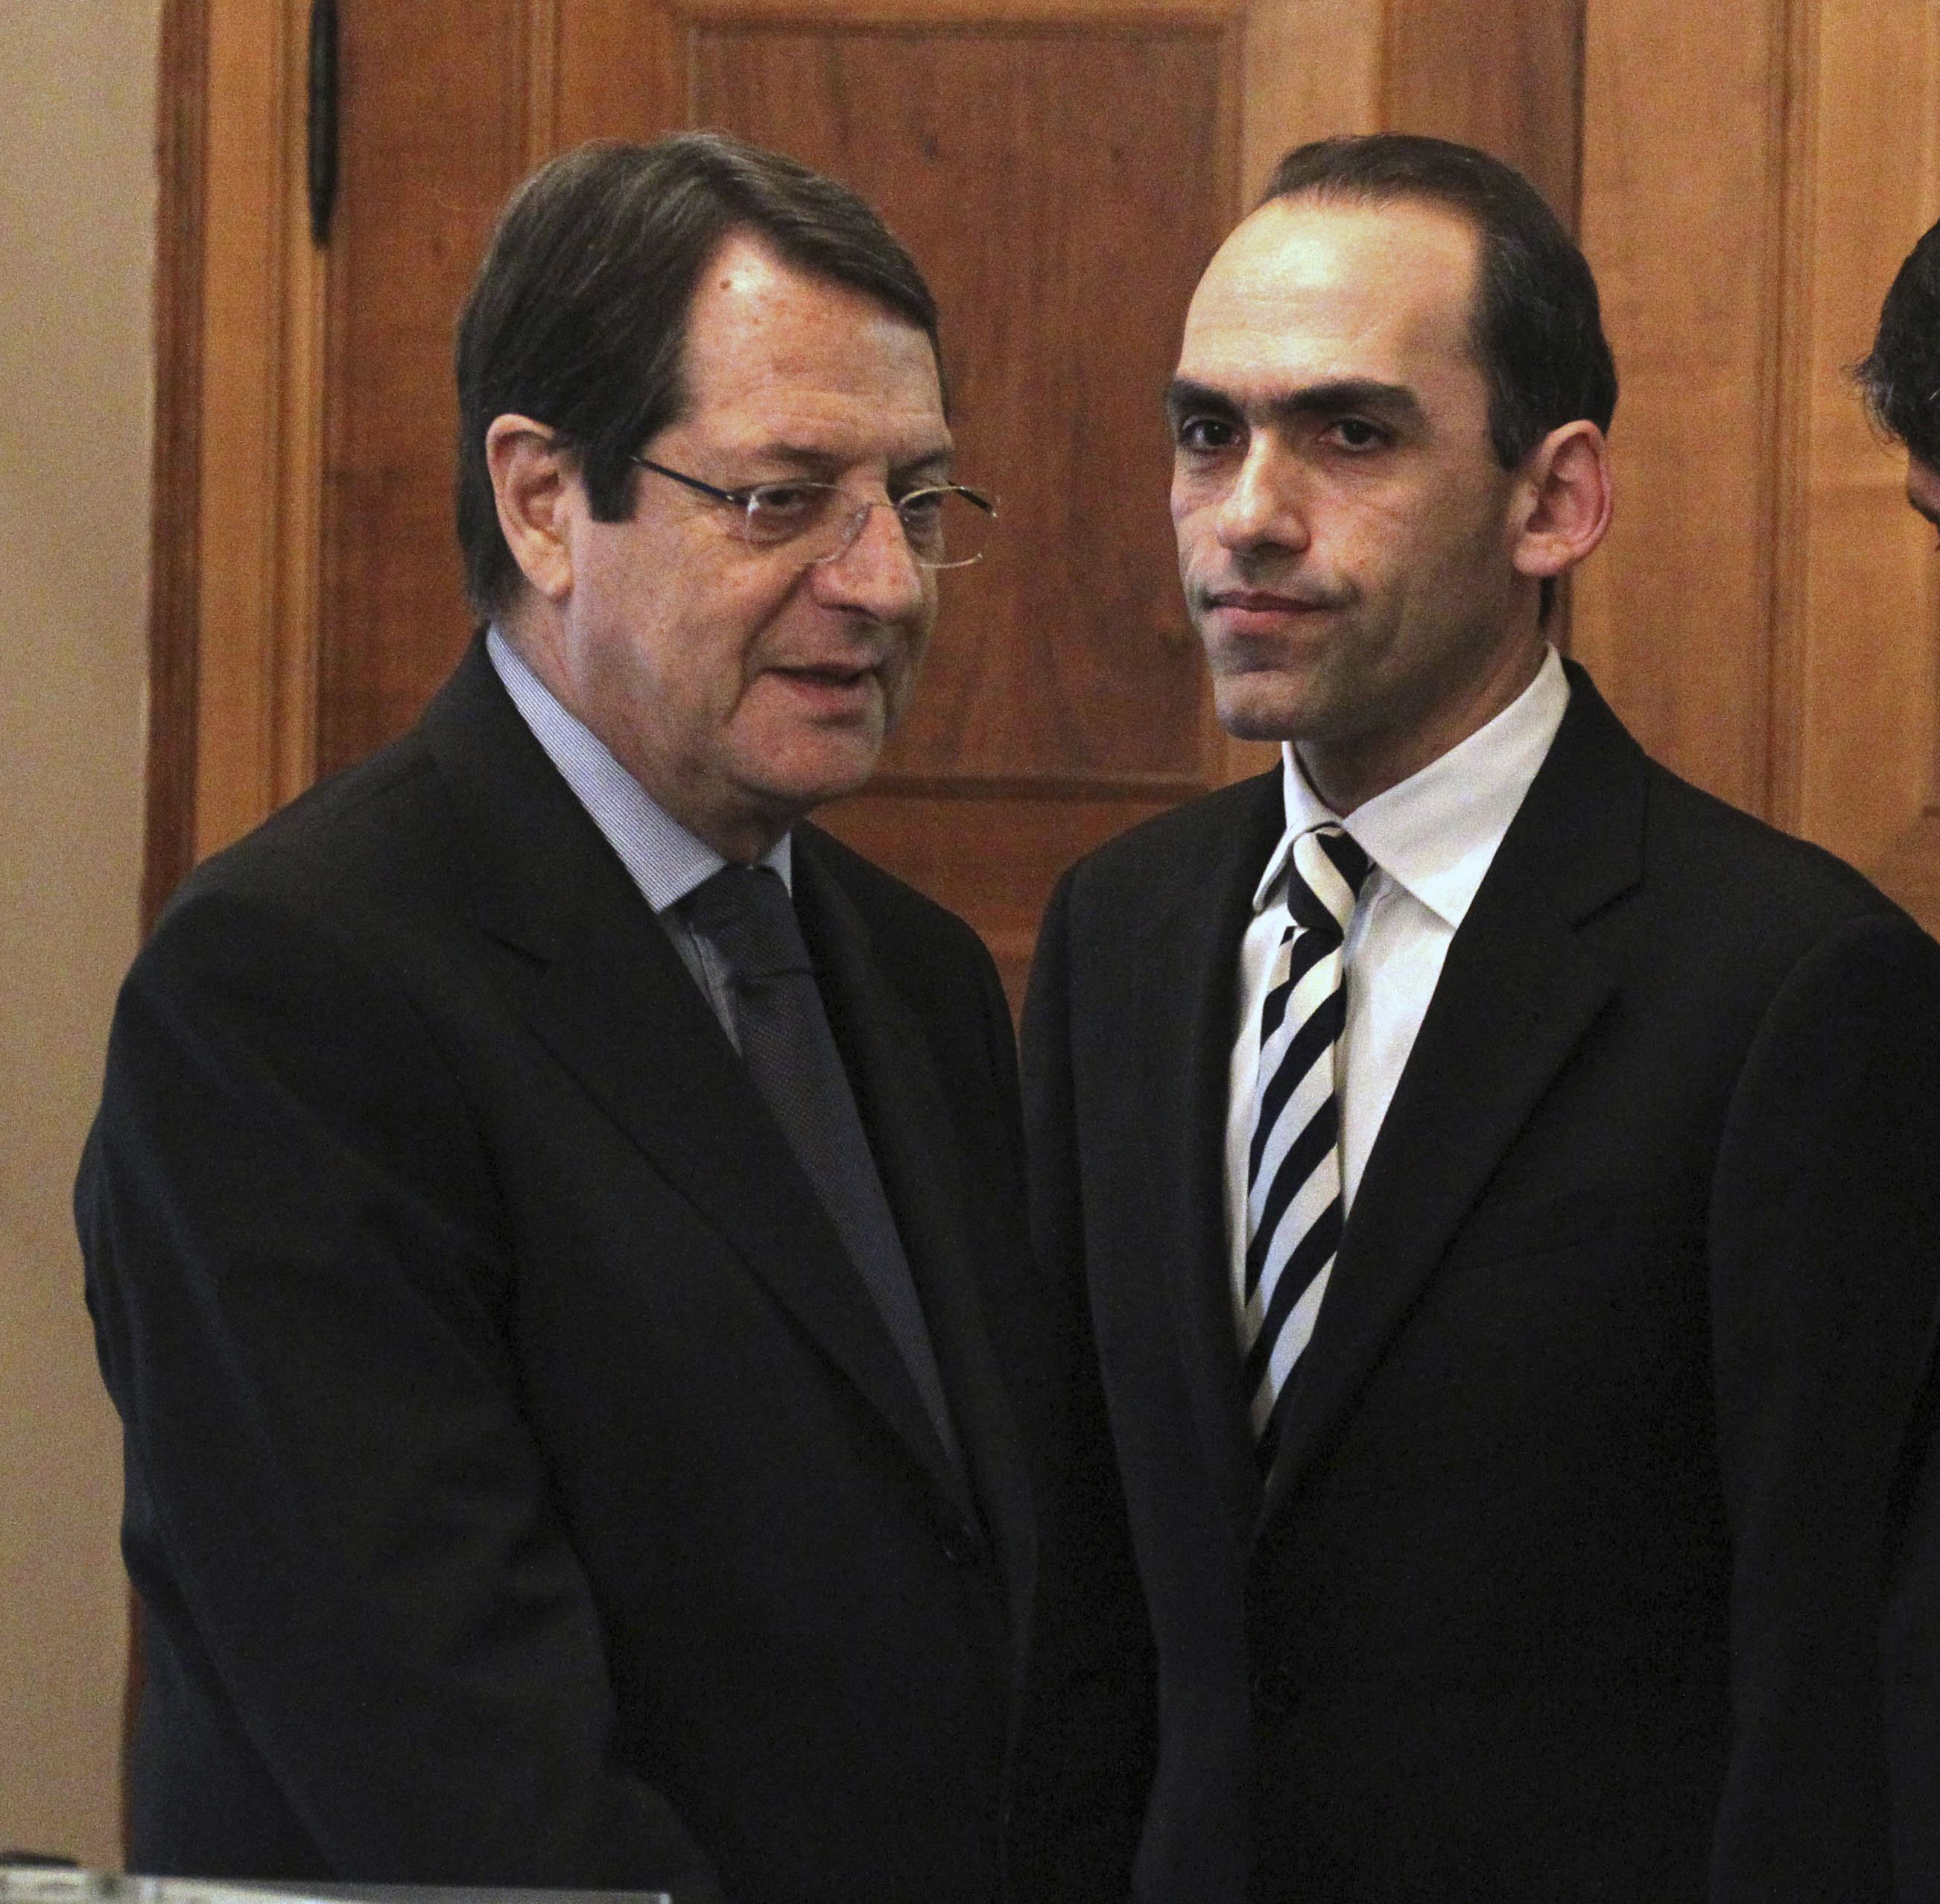 Κύπρος: Η Βουλή ενέκρινε το μνημόνιο